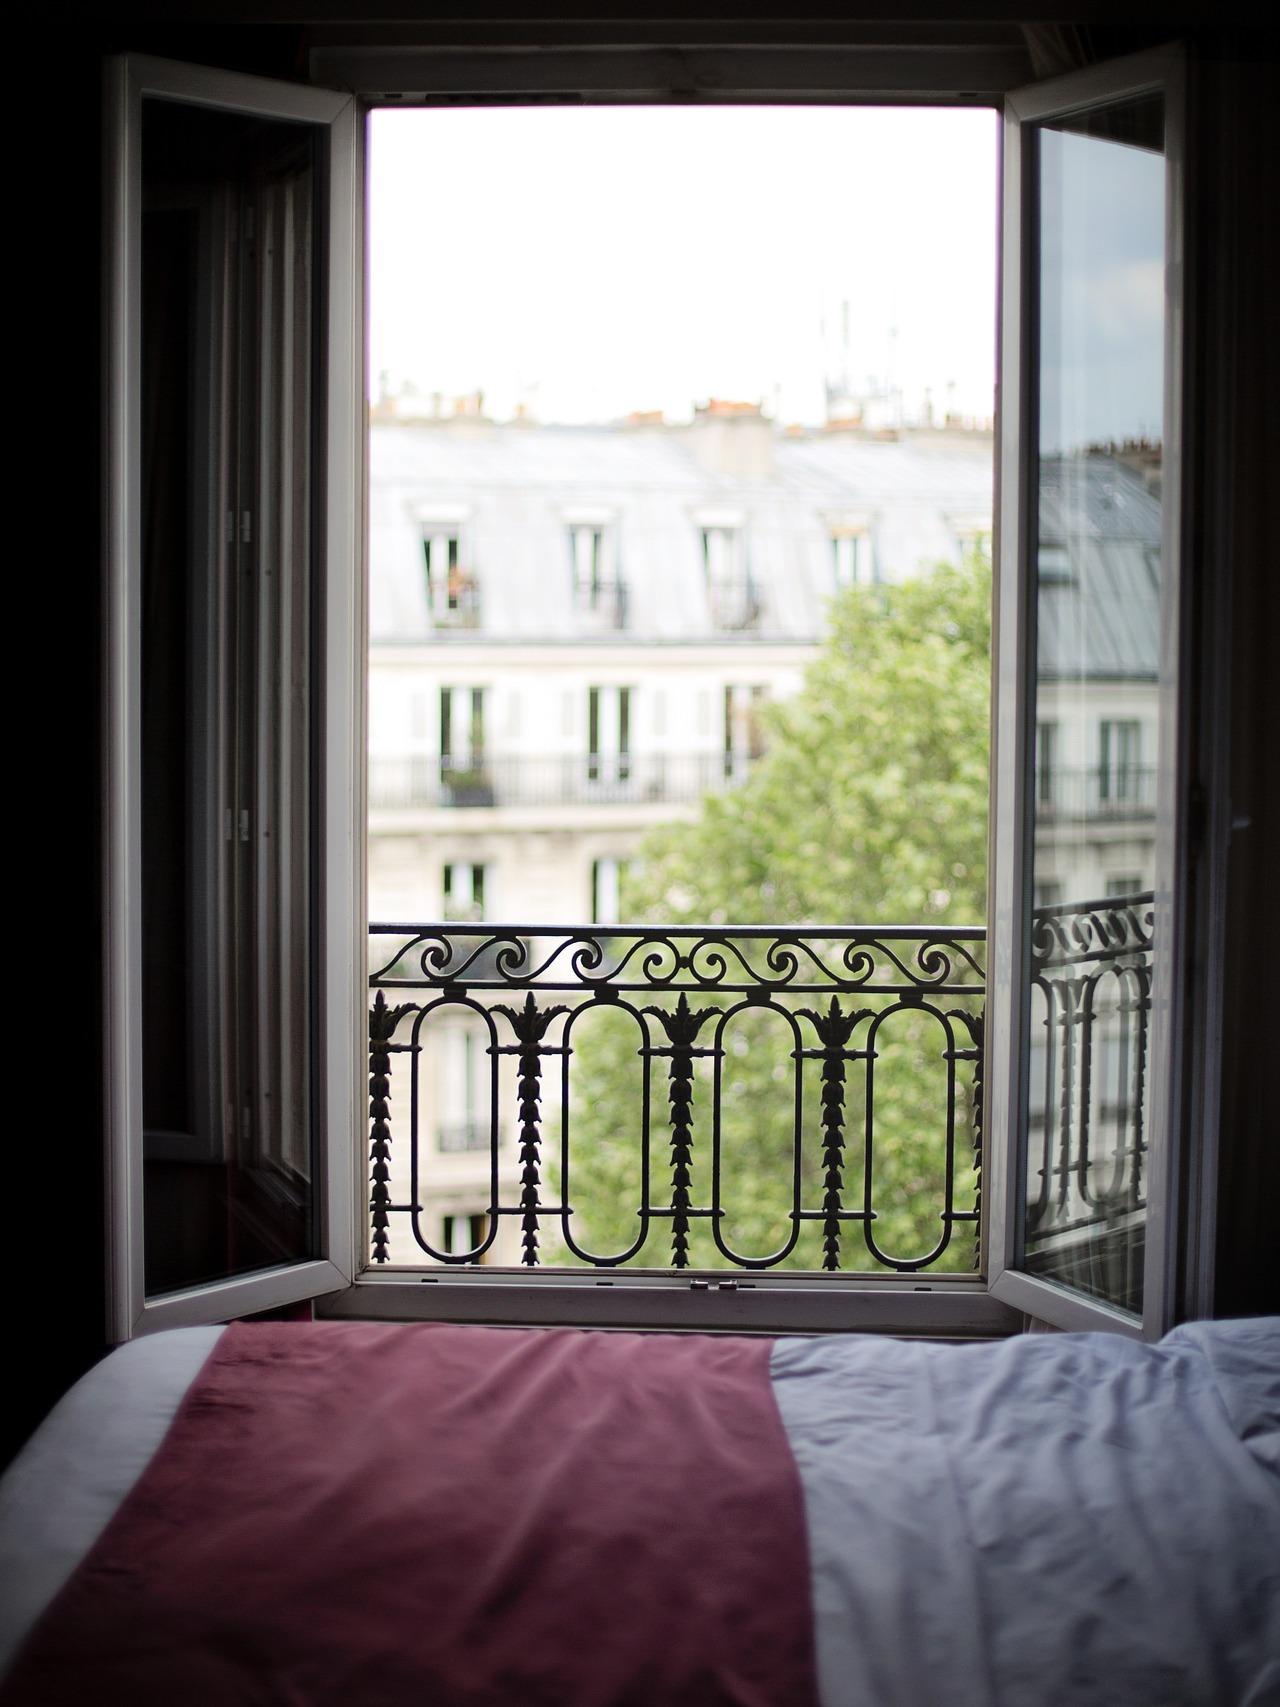 Imagen de la ventana abierta de un dormitorio en penumbra